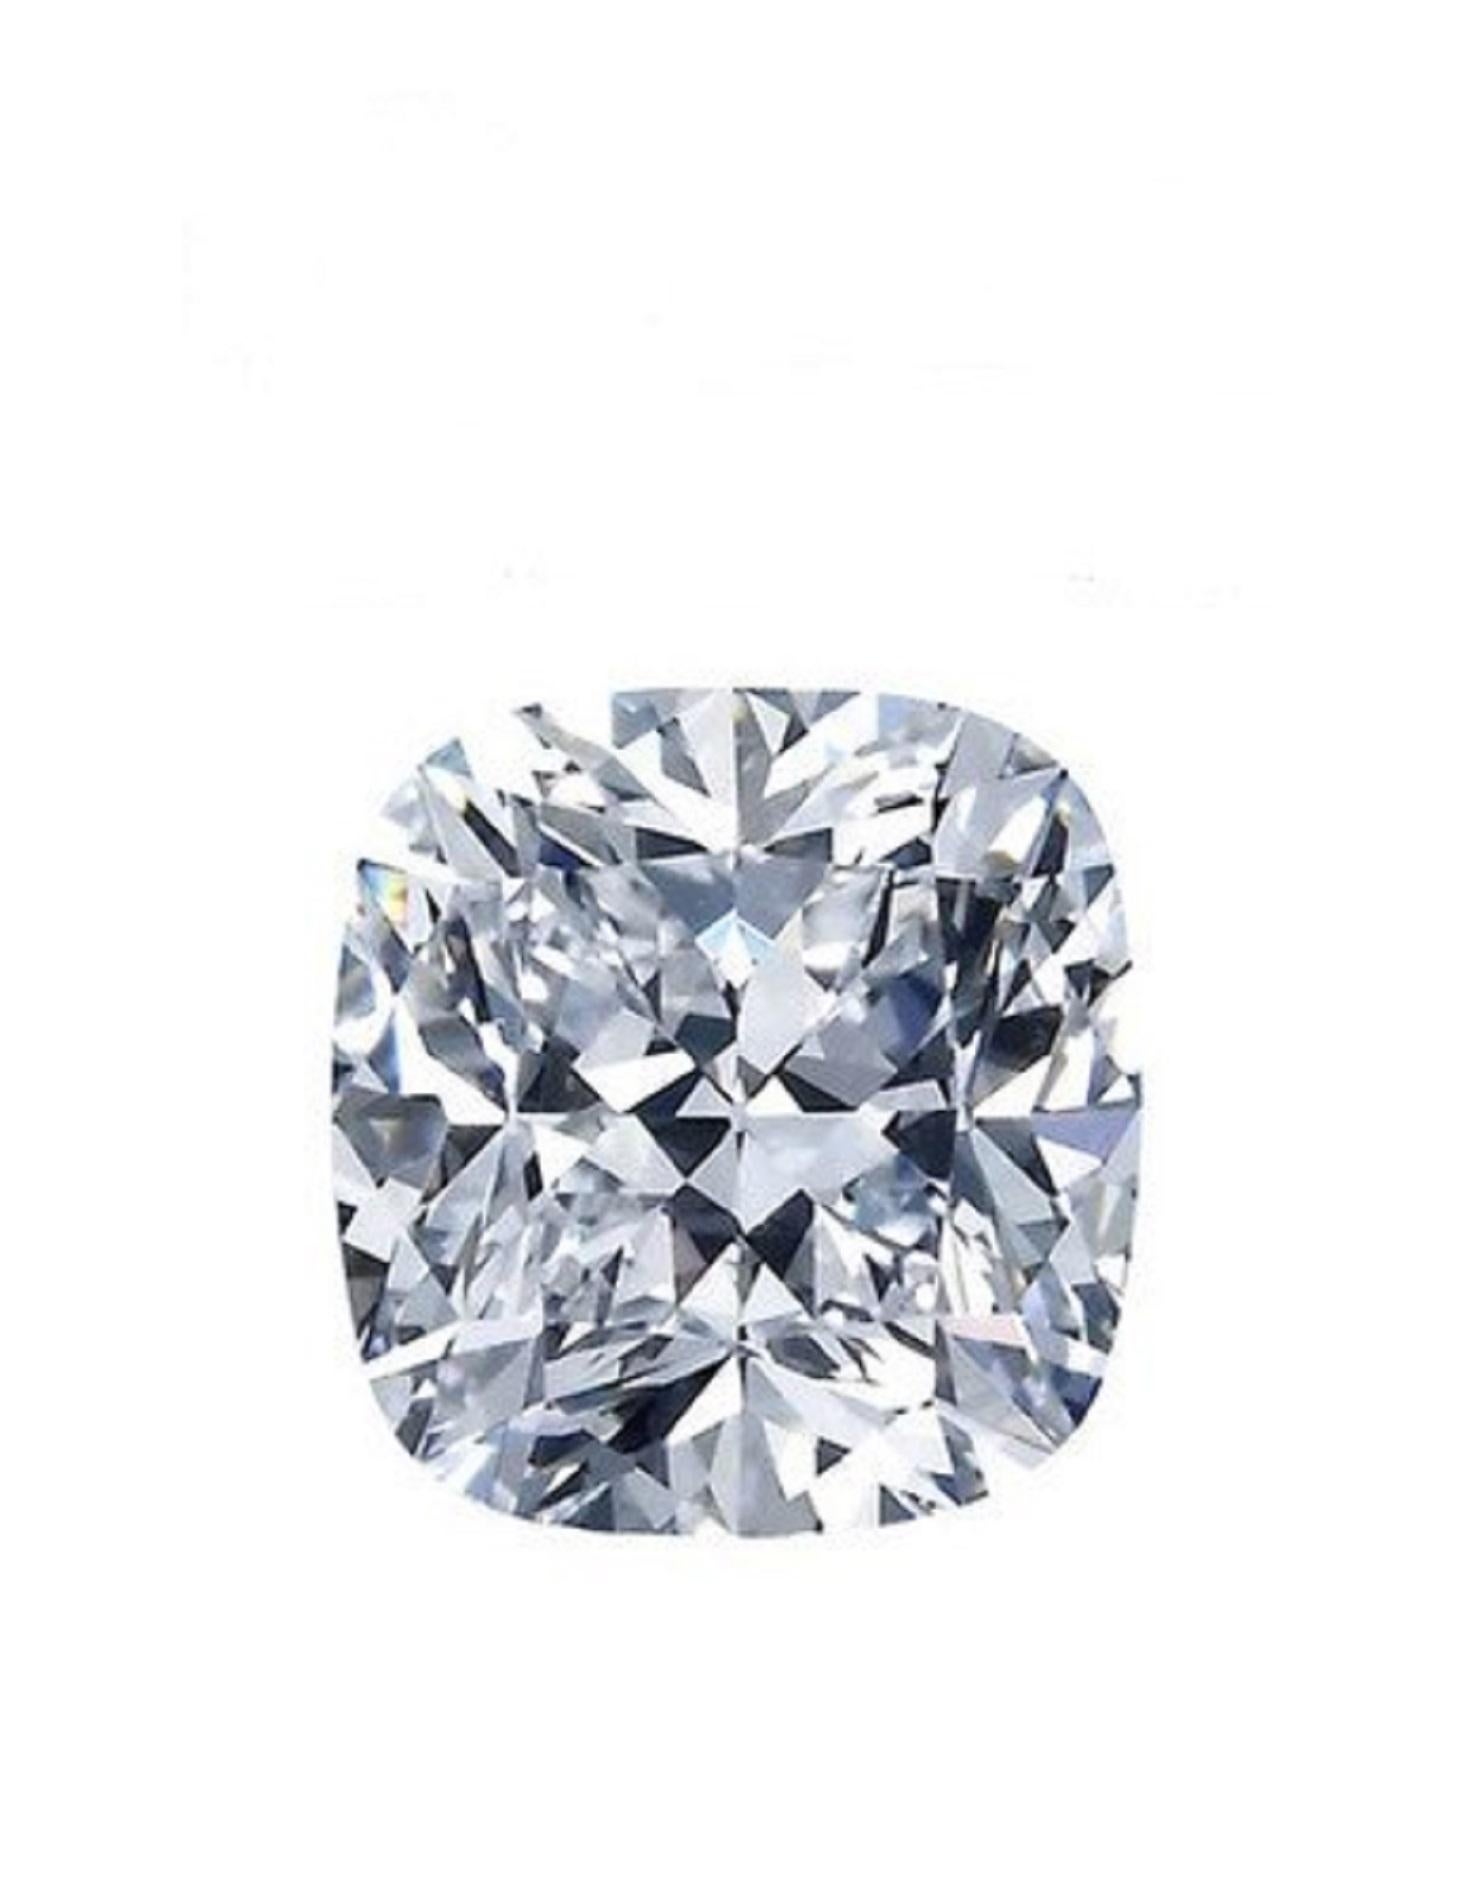 10 carat cushion cut diamond